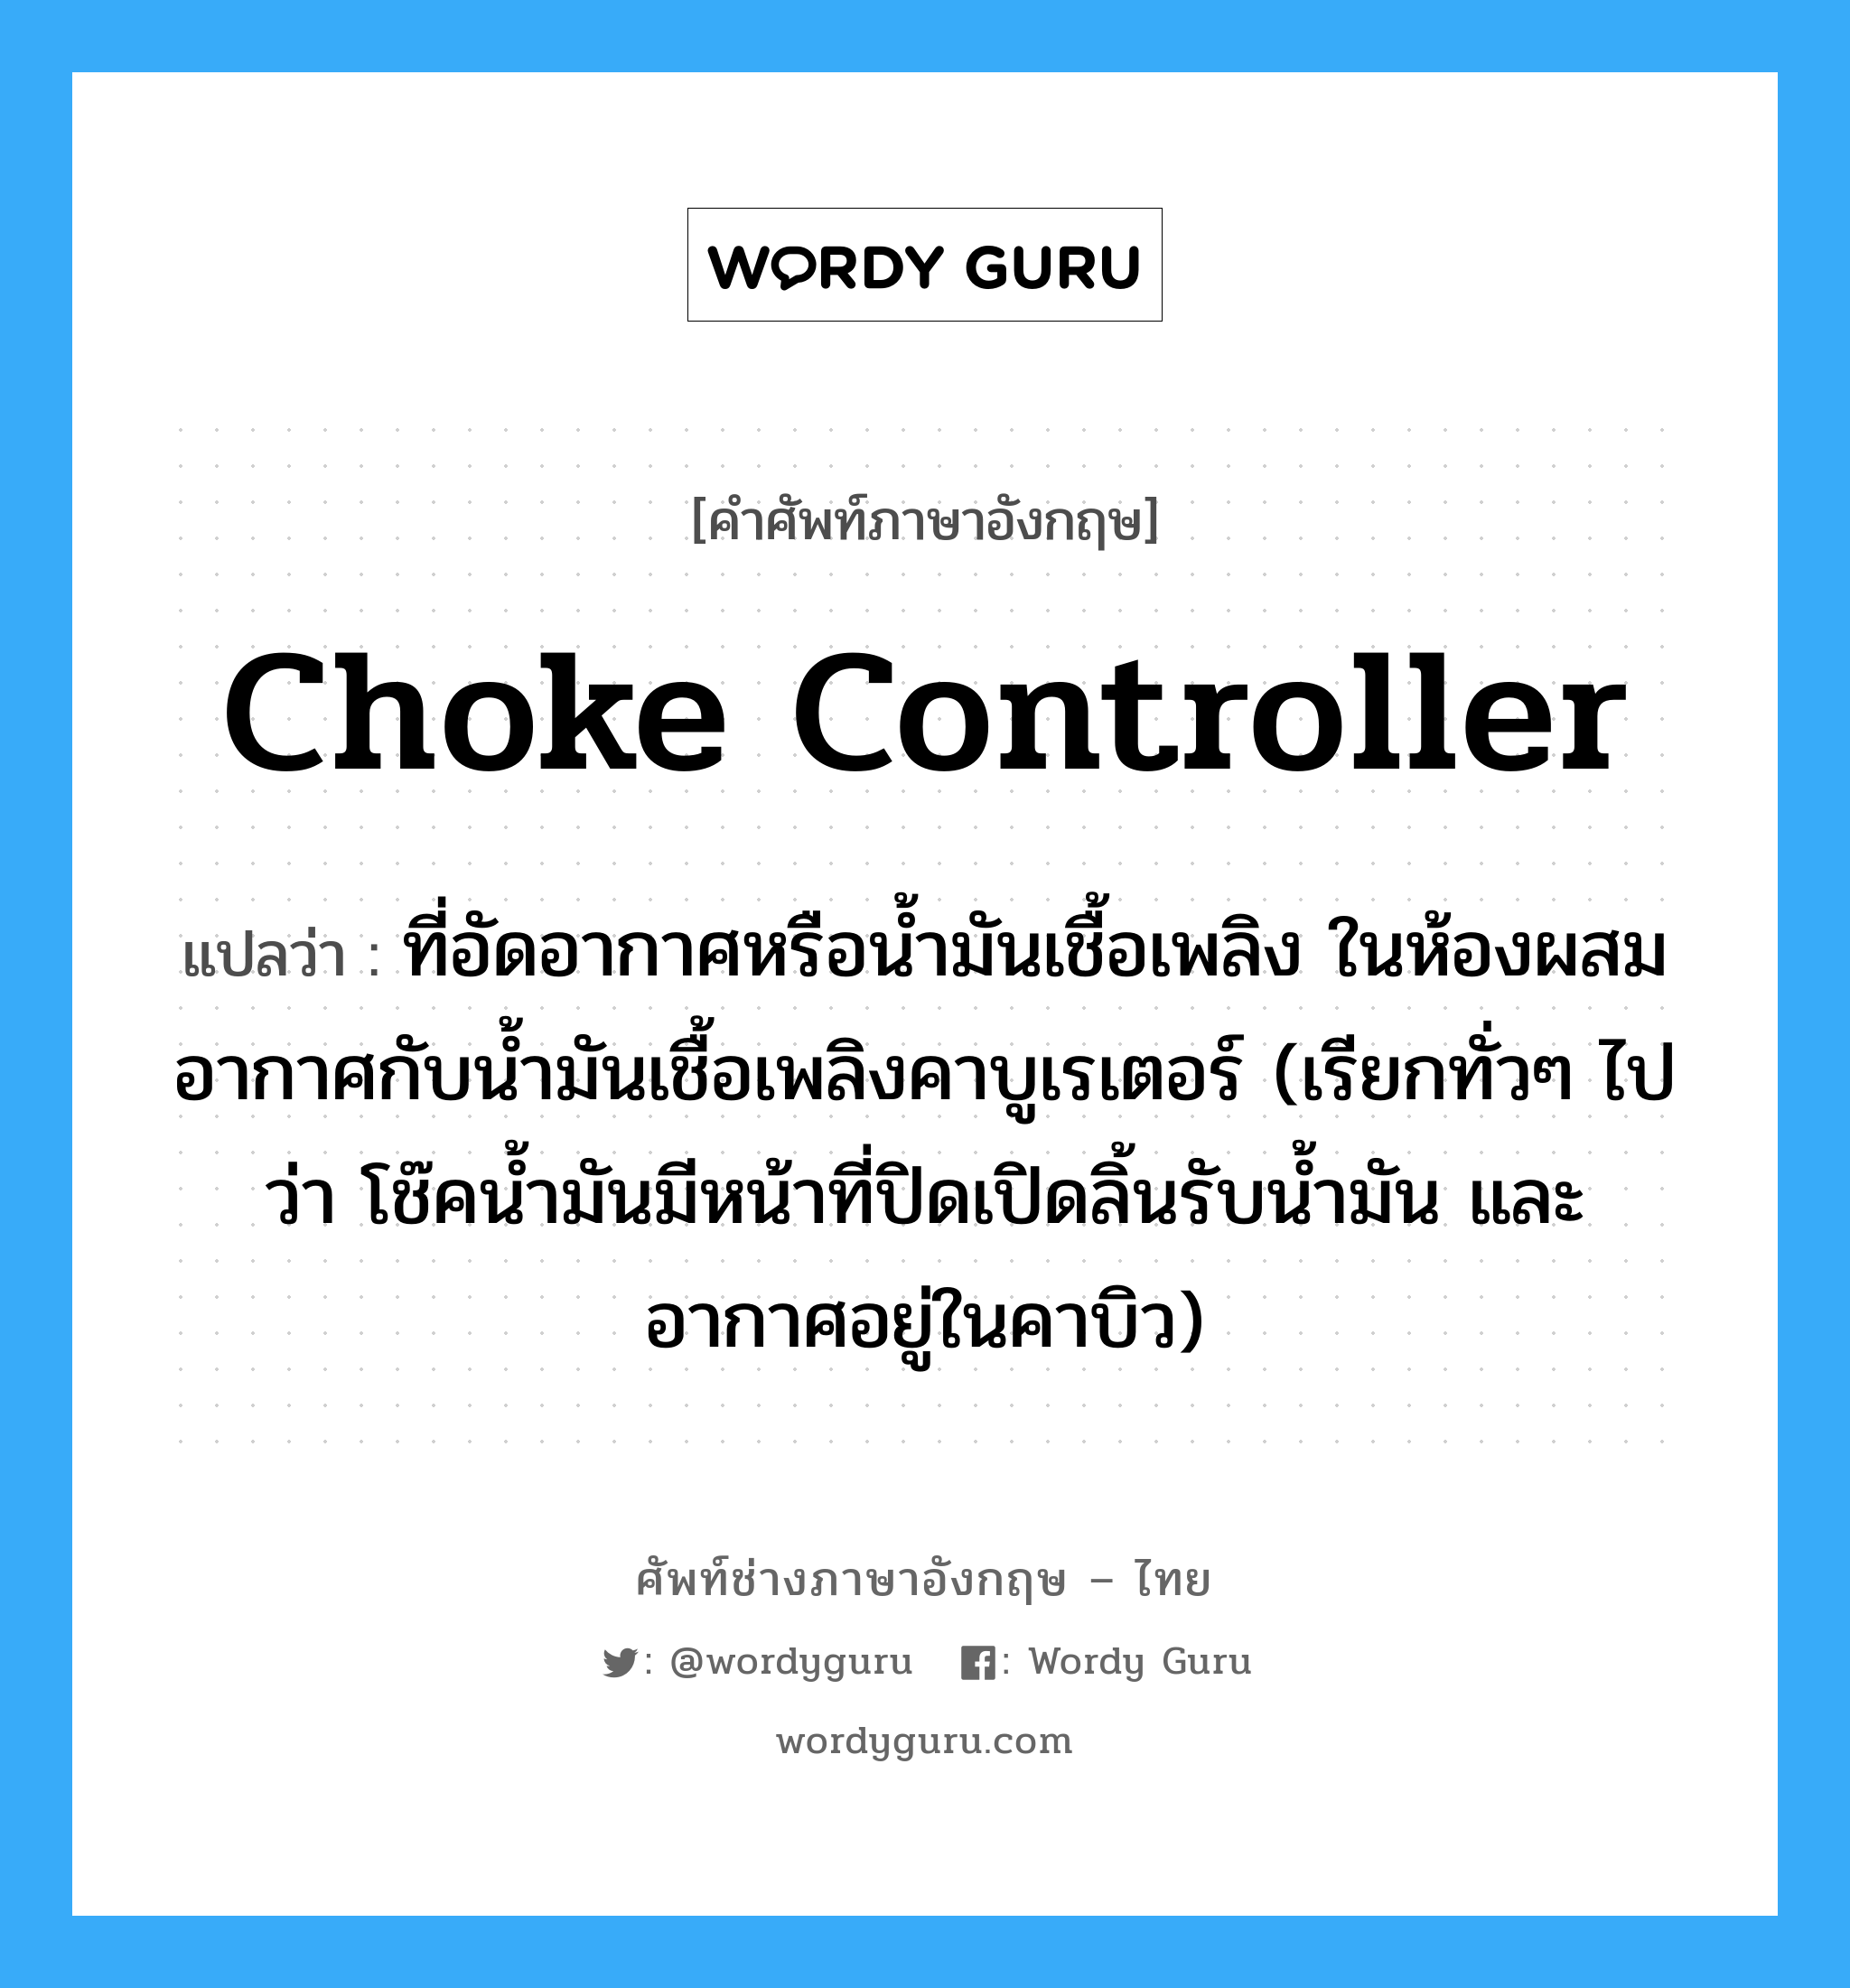 choke controller แปลว่า?, คำศัพท์ช่างภาษาอังกฤษ - ไทย choke controller คำศัพท์ภาษาอังกฤษ choke controller แปลว่า ที่อัดอากาศหรือน้ำมันเชื้อเพลิง ในห้องผสมอากาศกับน้ำมันเชื้อเพลิงคาบูเรเตอร์ (เรียกทั่วๆ ไปว่า โช๊คน้ำมันมีหน้าที่ปิดเปิดลิ้นรับน้ำมัน และอากาศอยู่ในคาบิว)